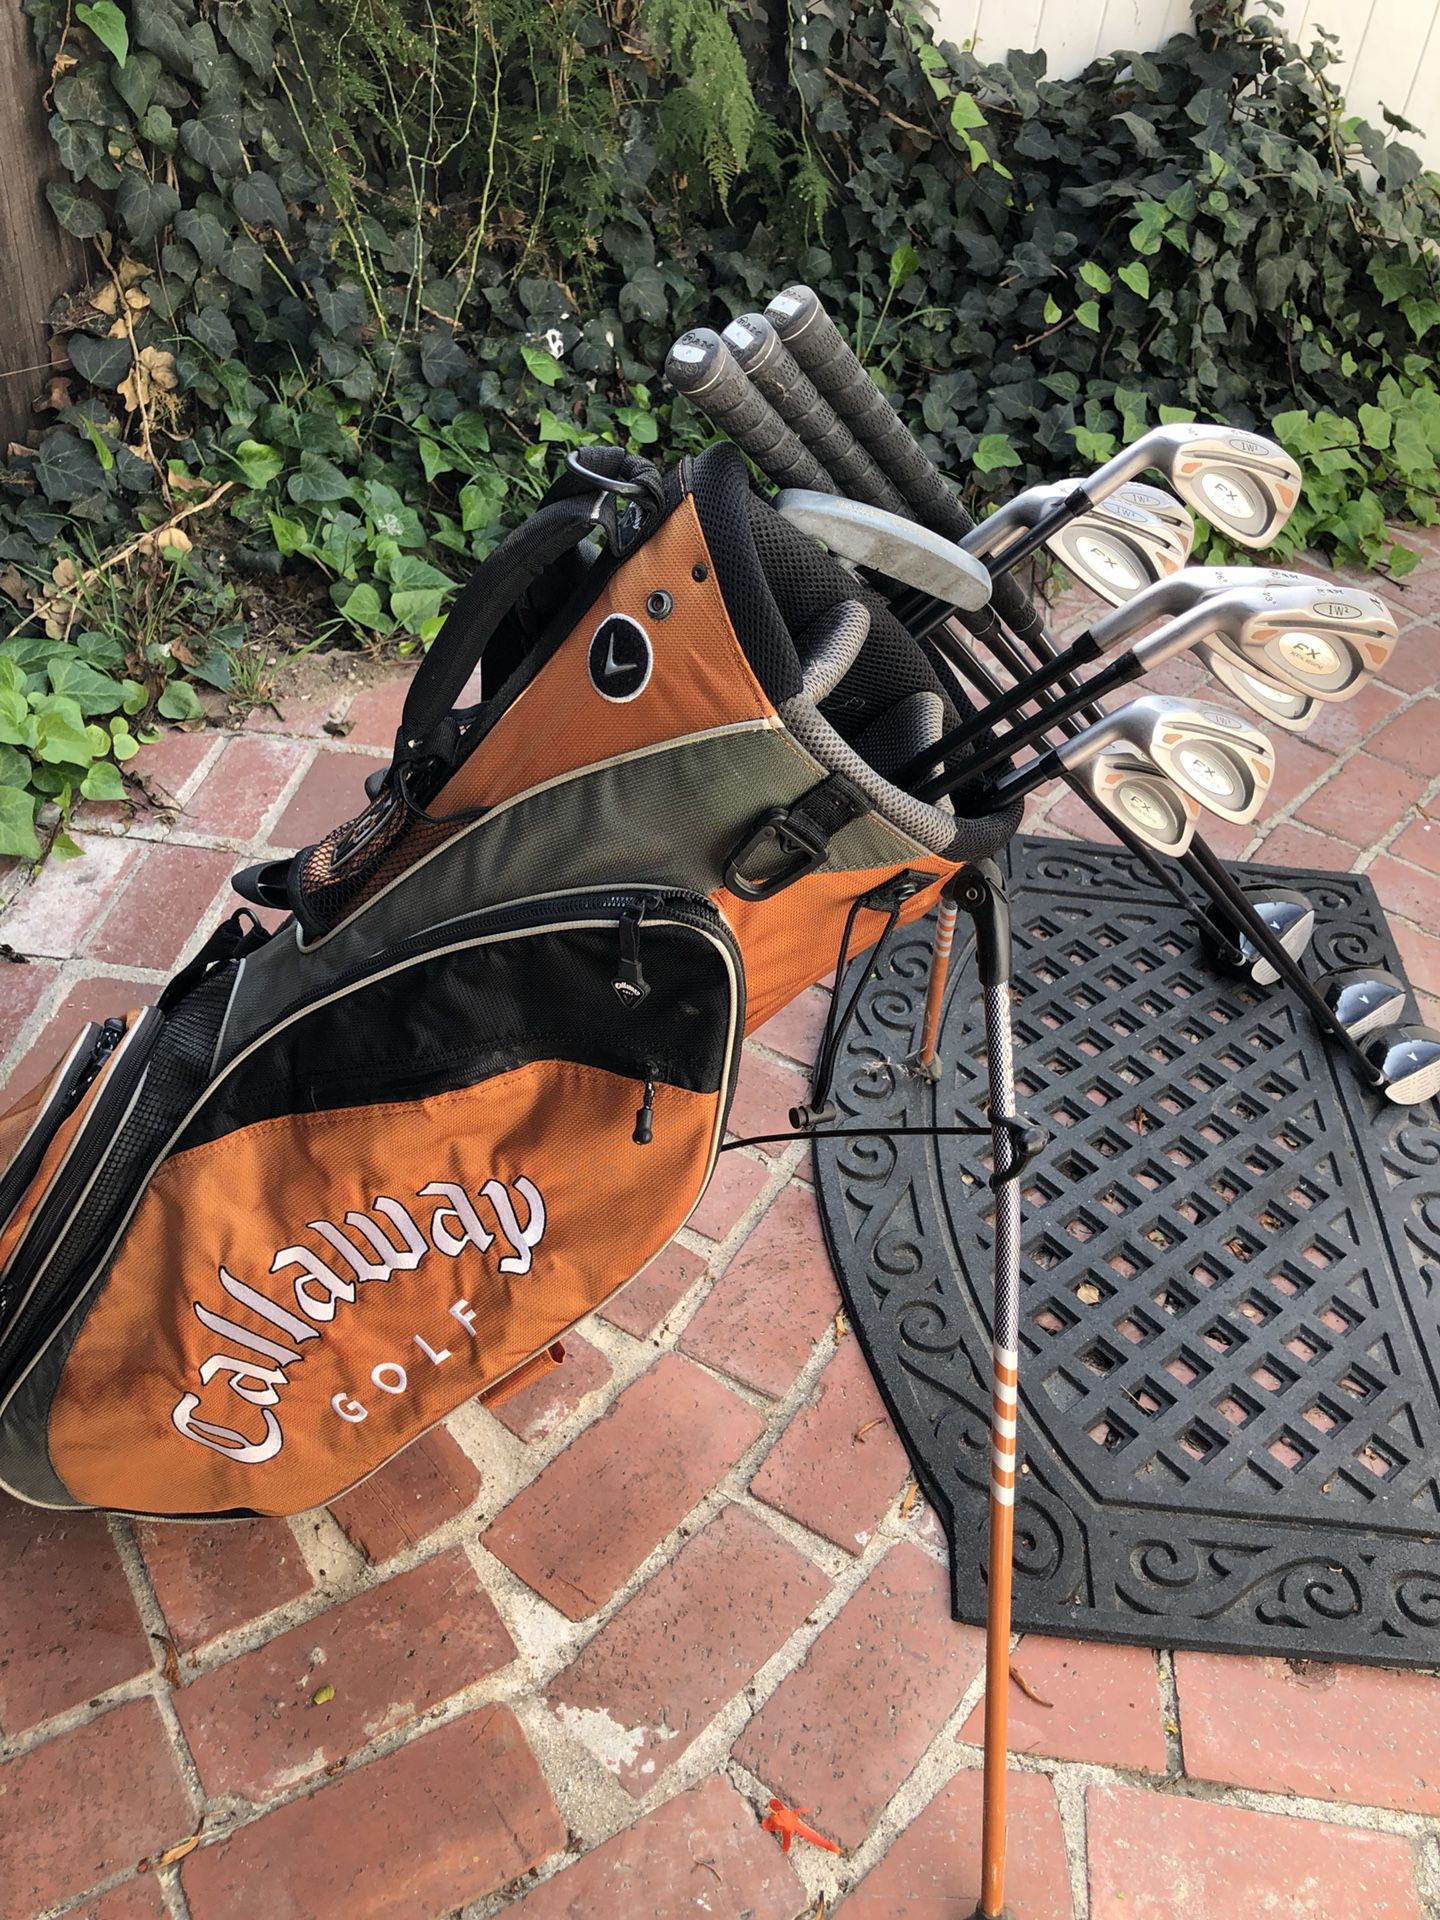 Golf clubs Ram FX full set Left Handed